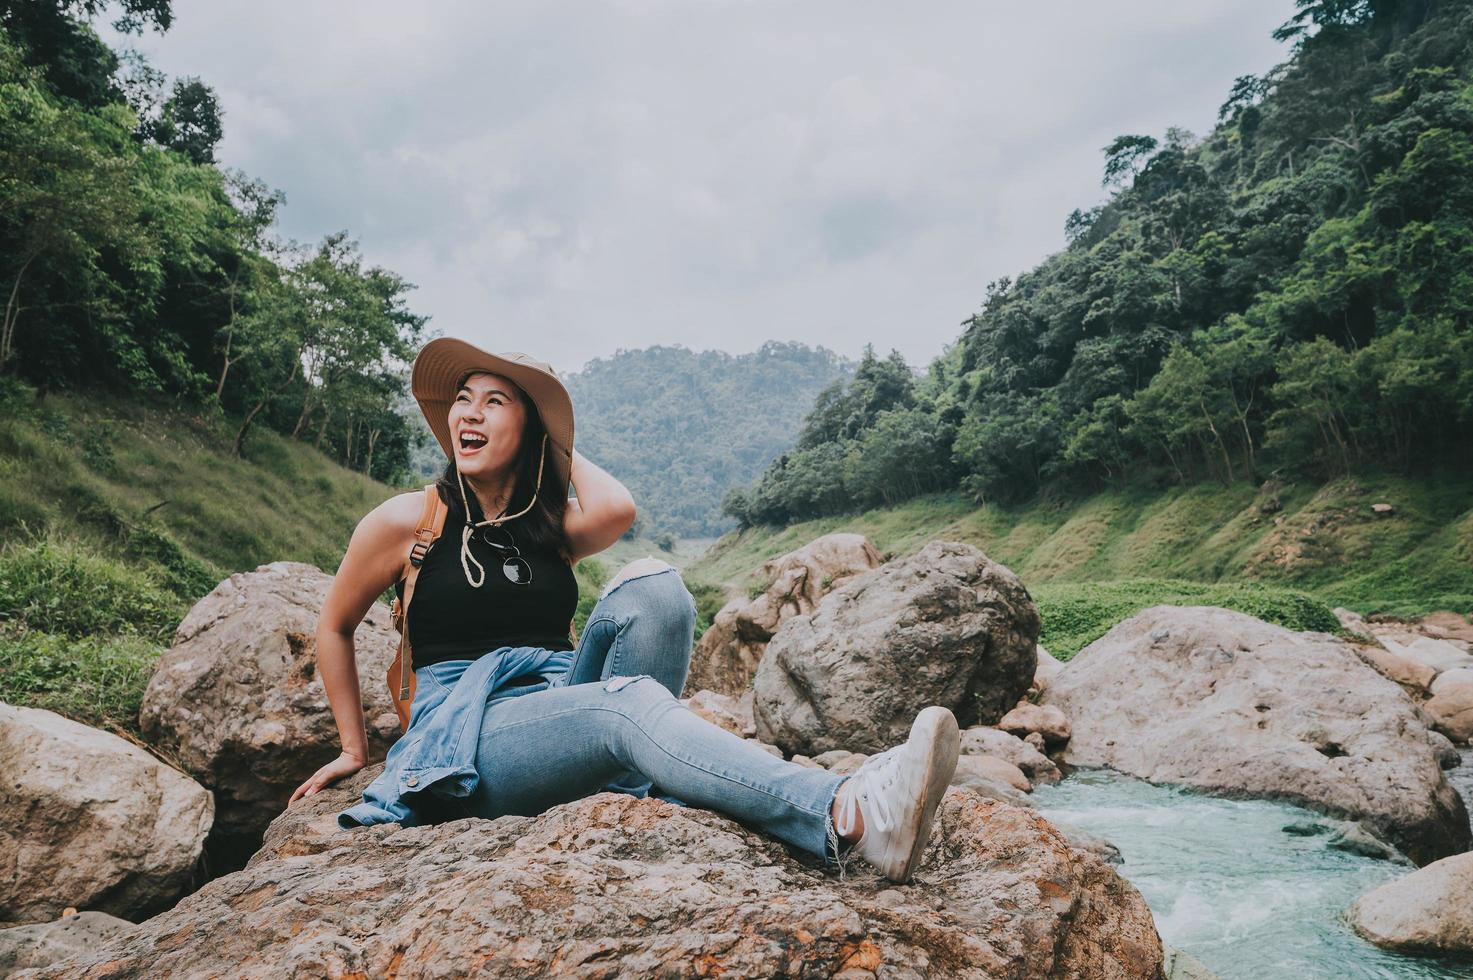 femme heureuse en riant assis sur le rocher au bord de la rivière photo